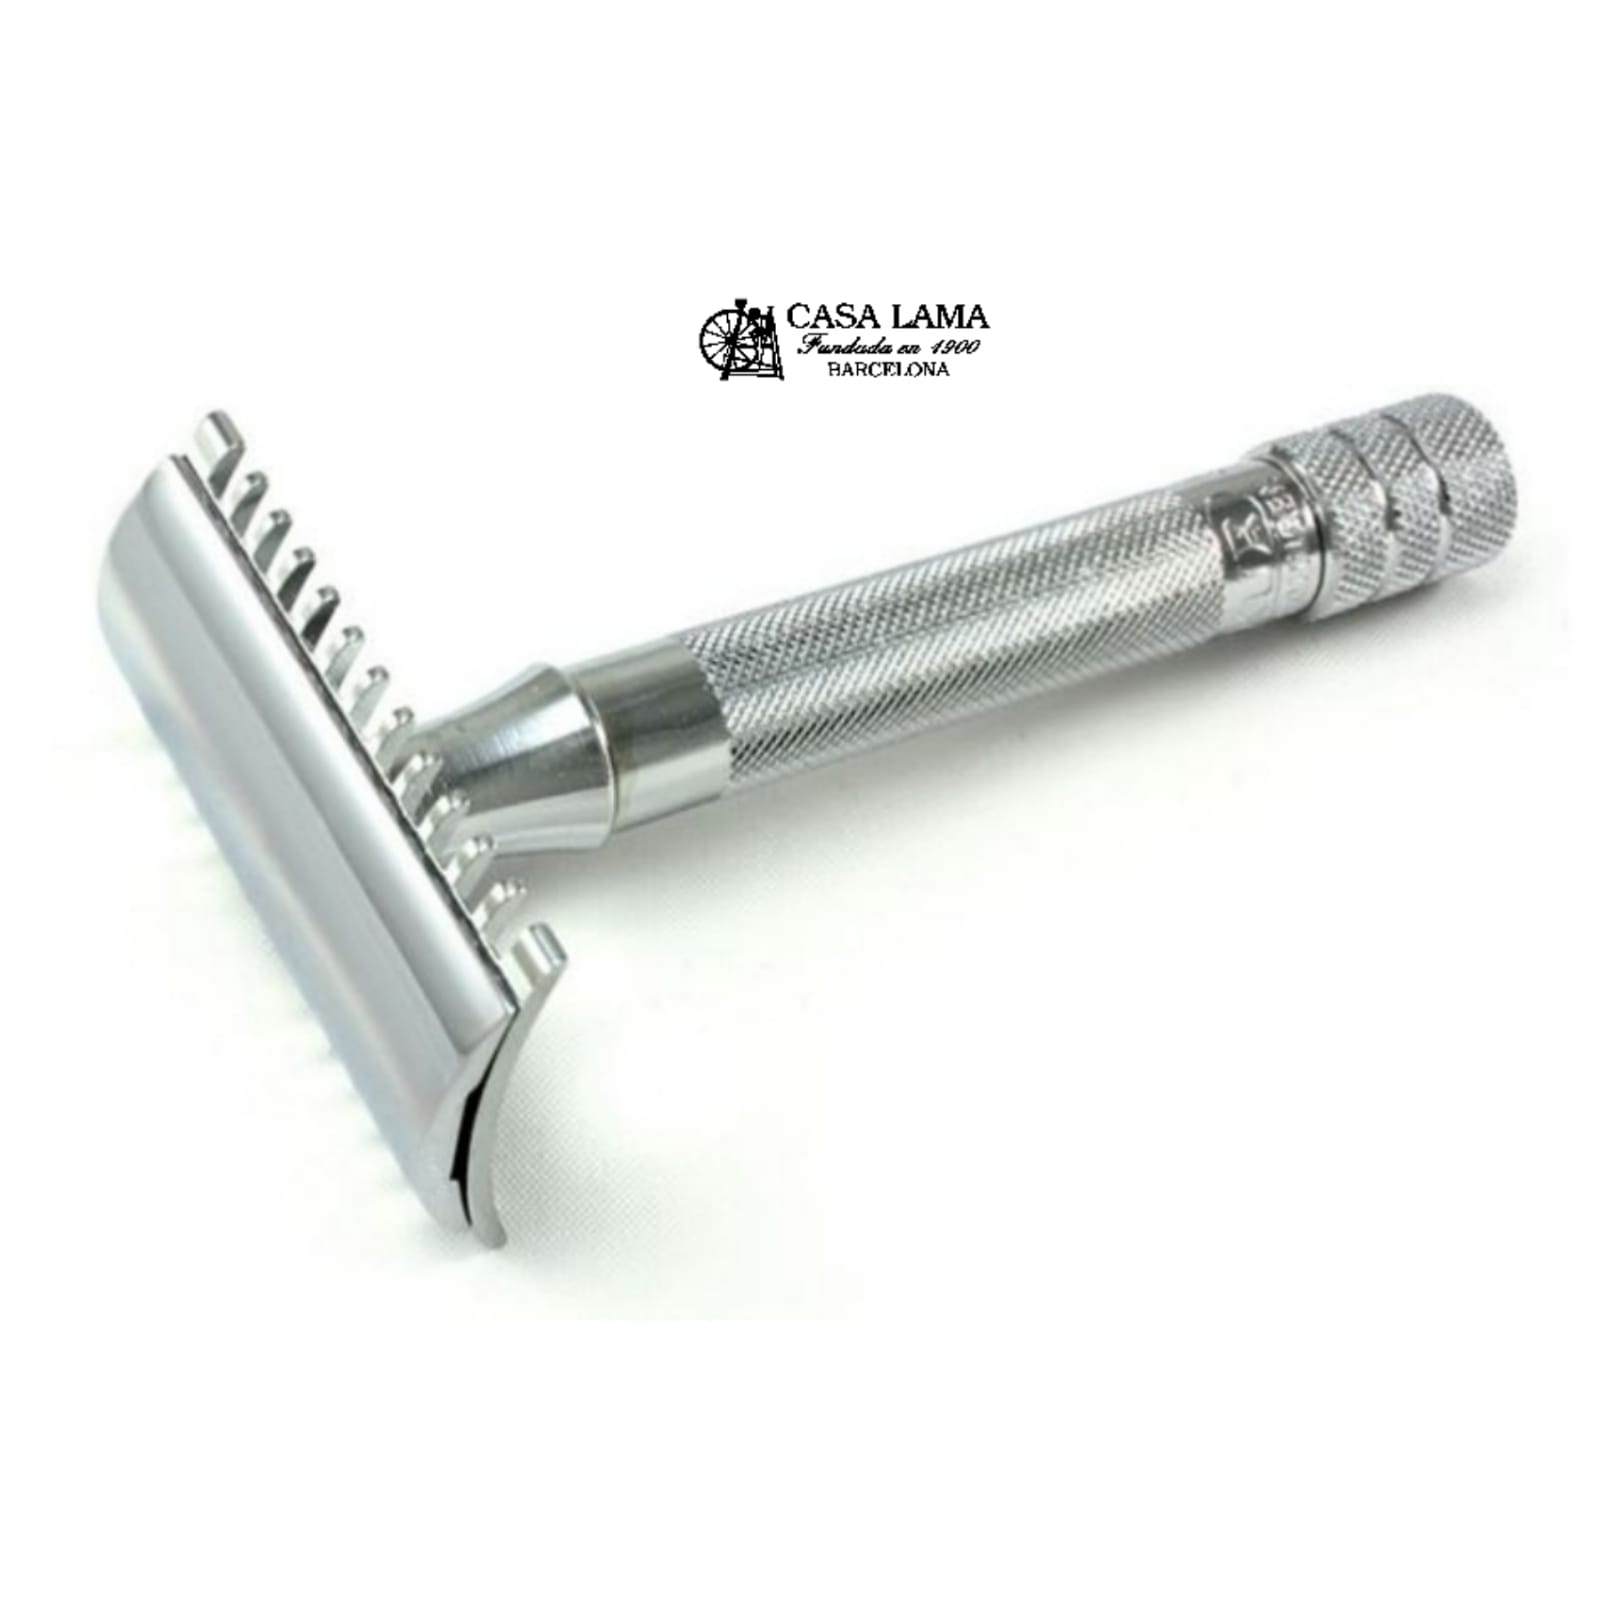 Maquina de afeitar modelo15- Merkur - Cuchilleria Casa Lama